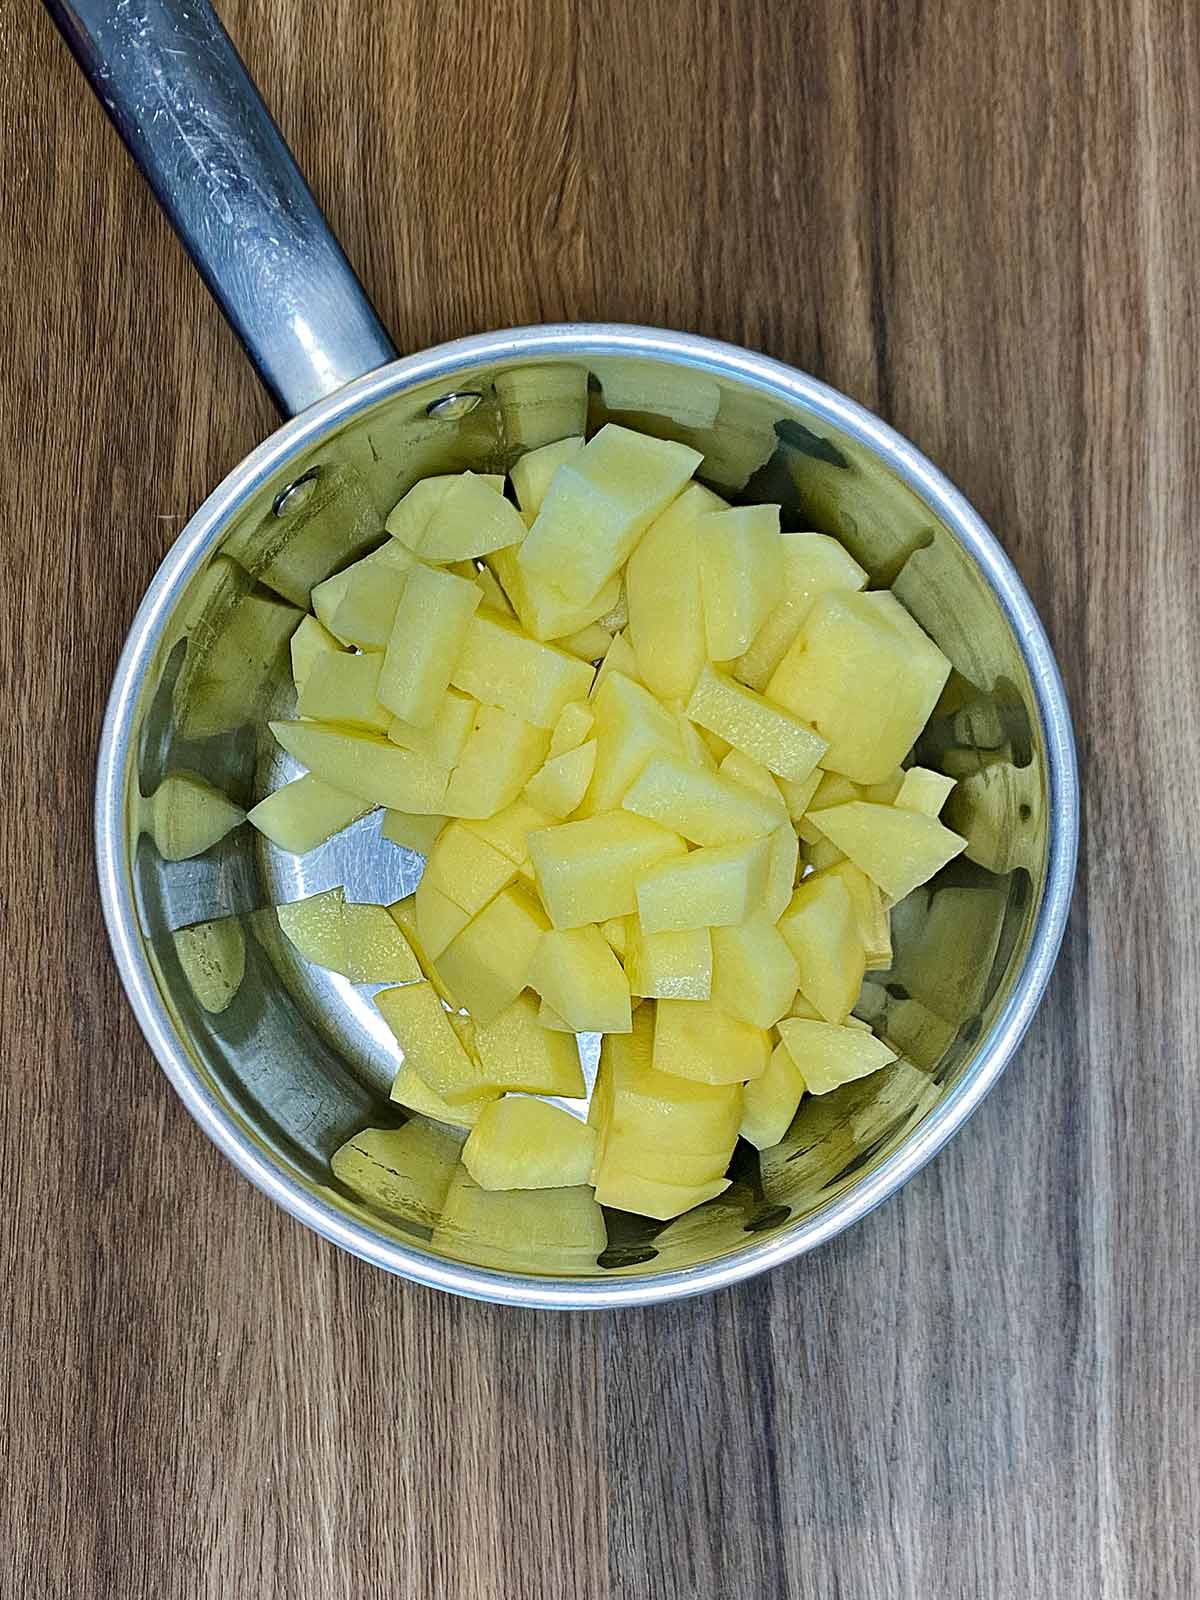 Cubes of potato in a saucepan.